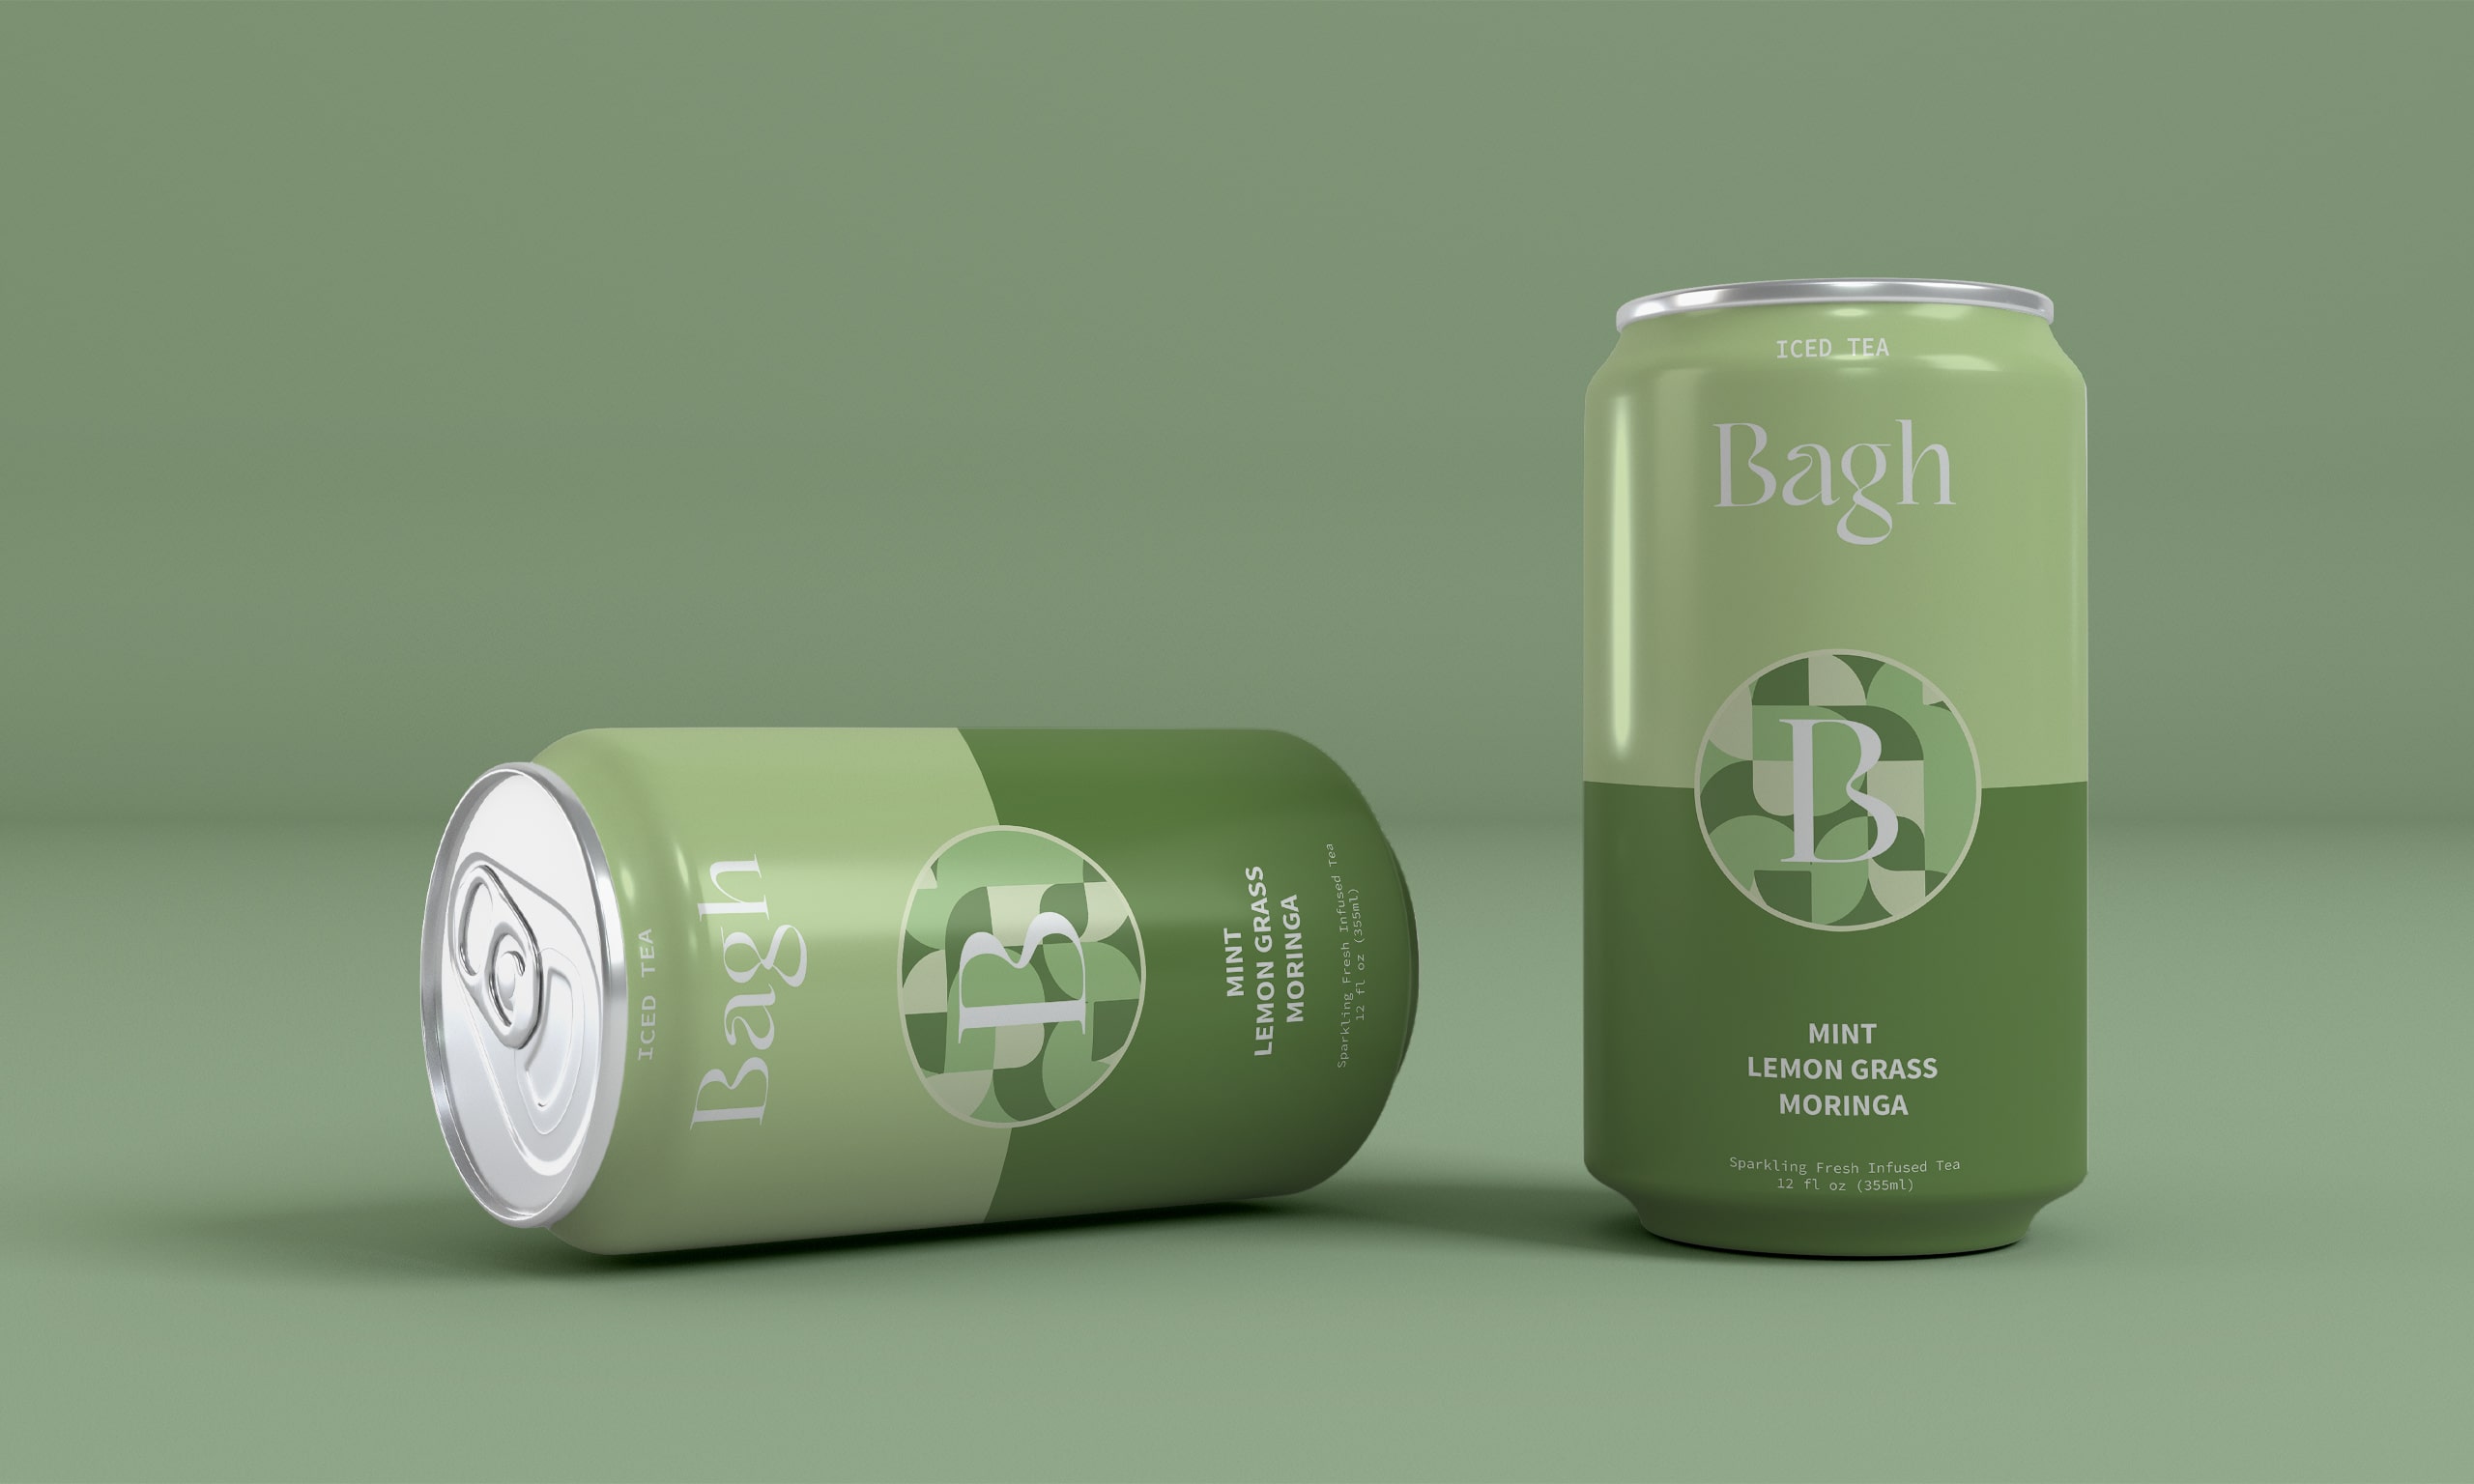 Bagh_Iced_tea_green_packaging_culr-min.jpg